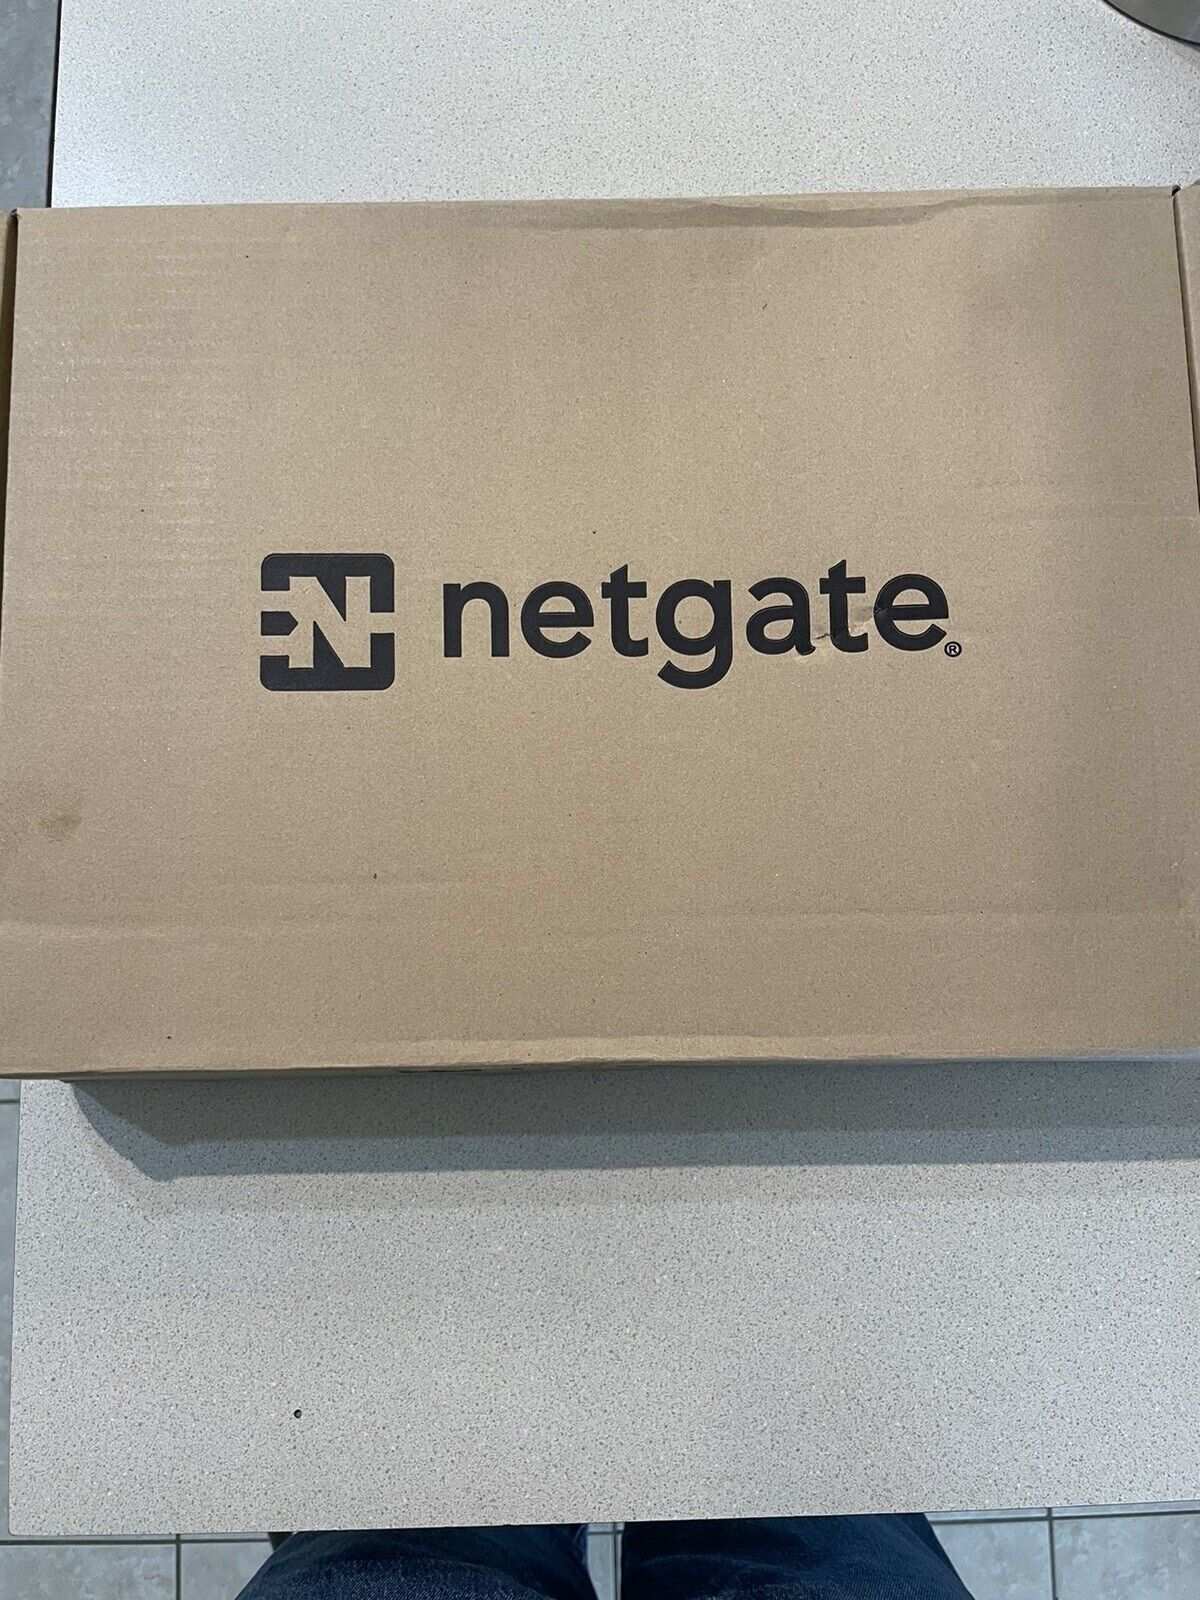 NETGATE 4100 BASE pfSense Security Gateway FIREWALL VPN ROUTER USA EU PLUGS NEW